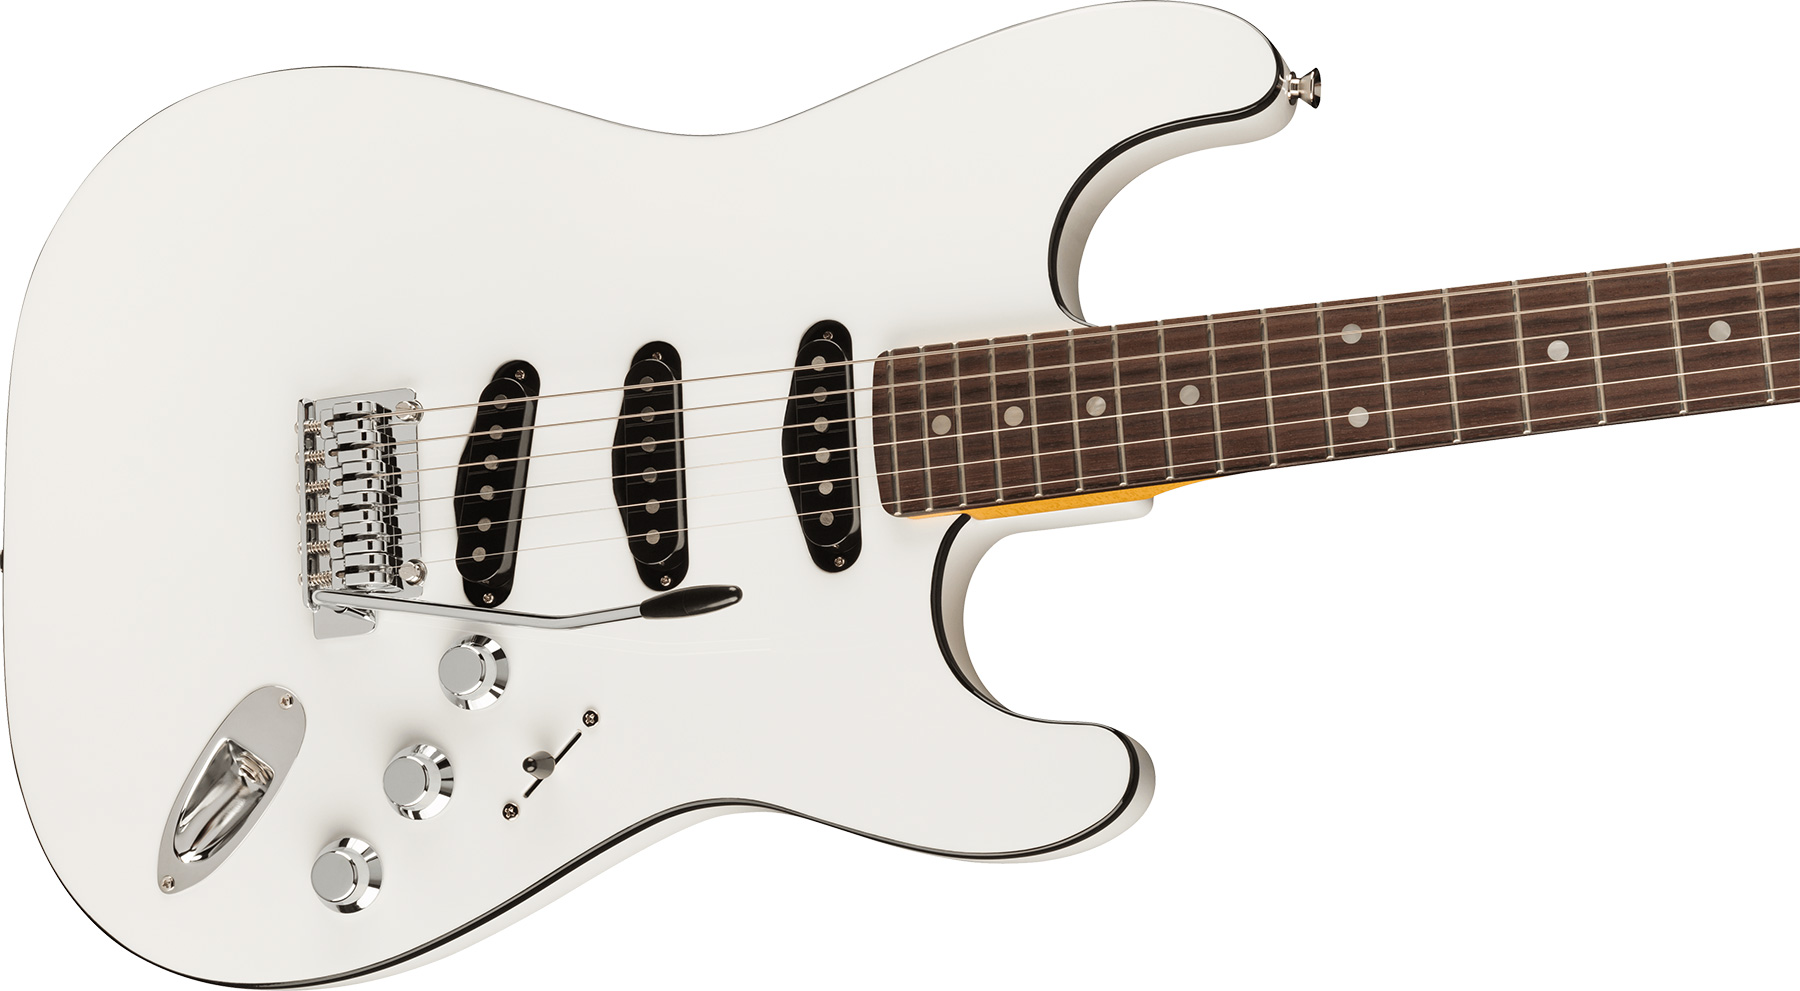 Fender Strat Aerodyne Special Jap 3s Trem Rw - Bright White - Elektrische gitaar in Str-vorm - Variation 2